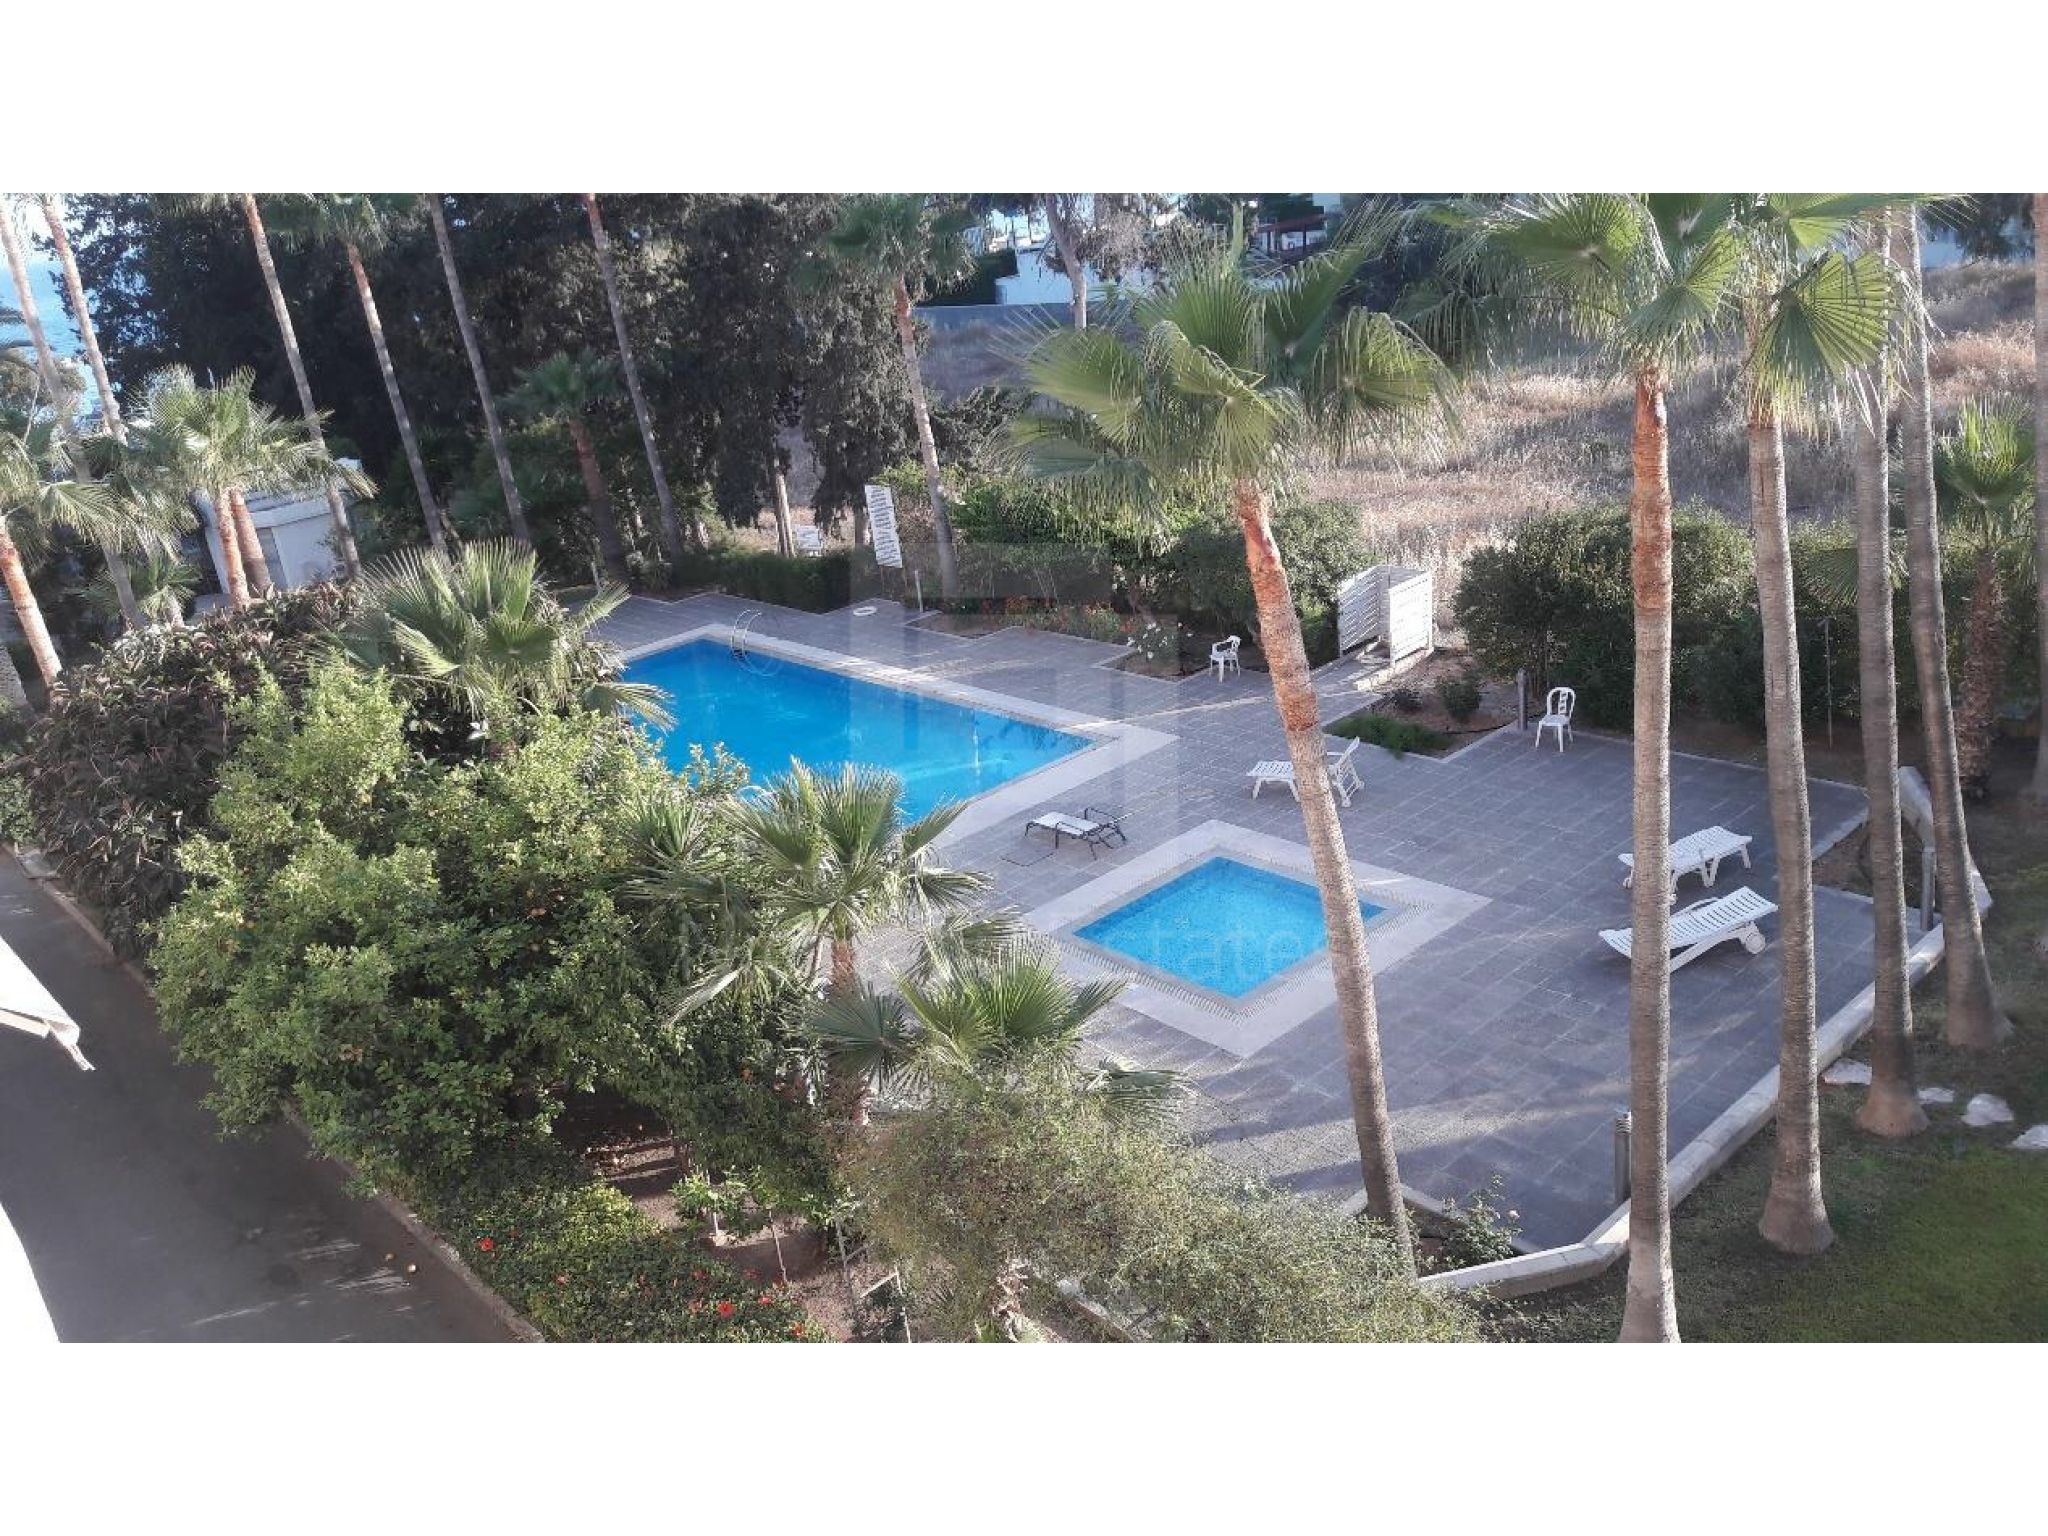 https://www.propertiescy.com/images/uploads/listings/large/14194-1592901219_swimming-pool.jpg